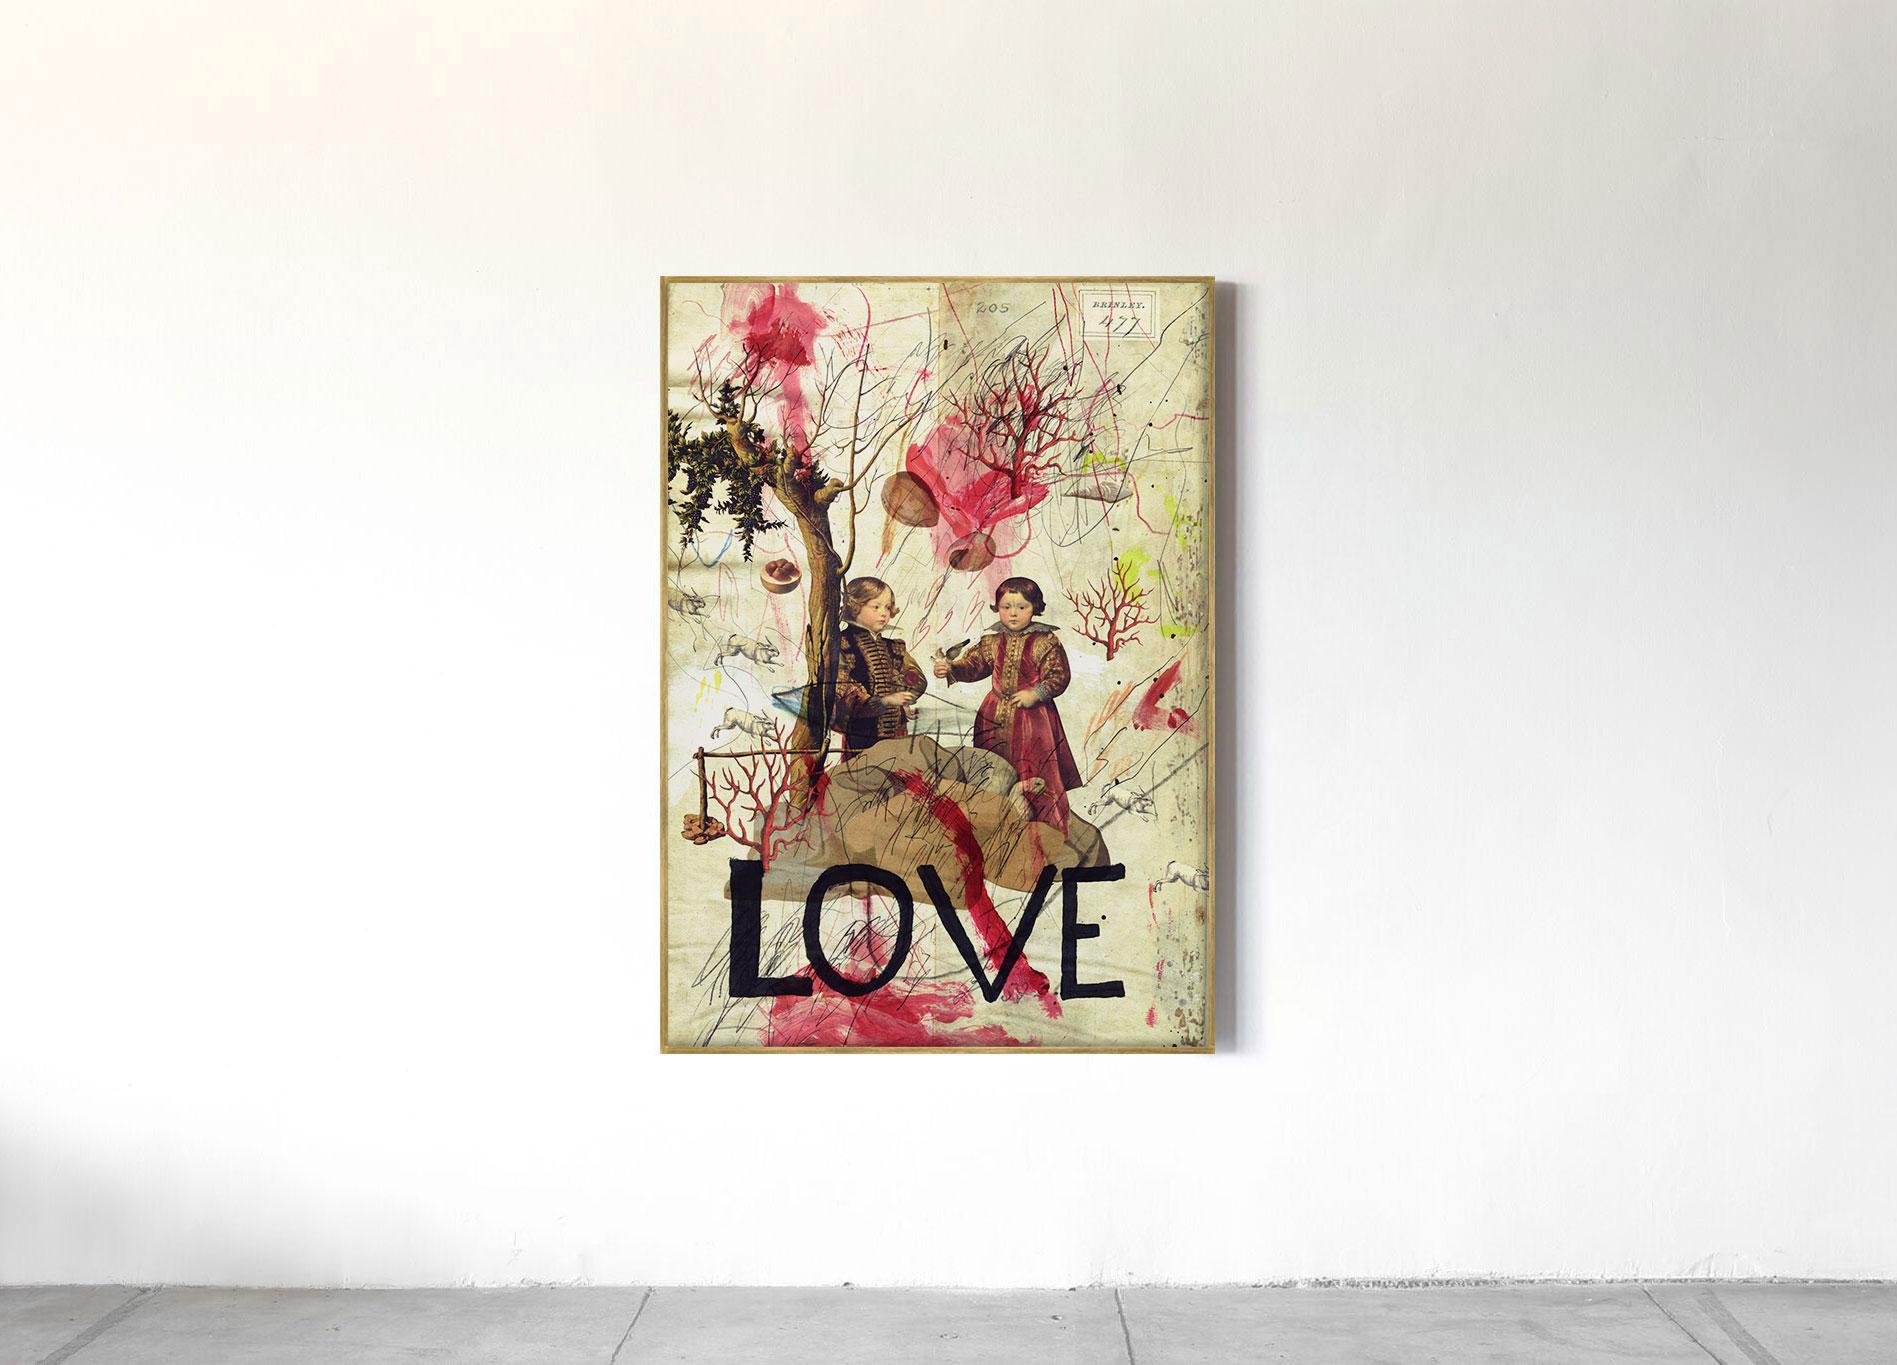 Love - Print by Eduardo Recife